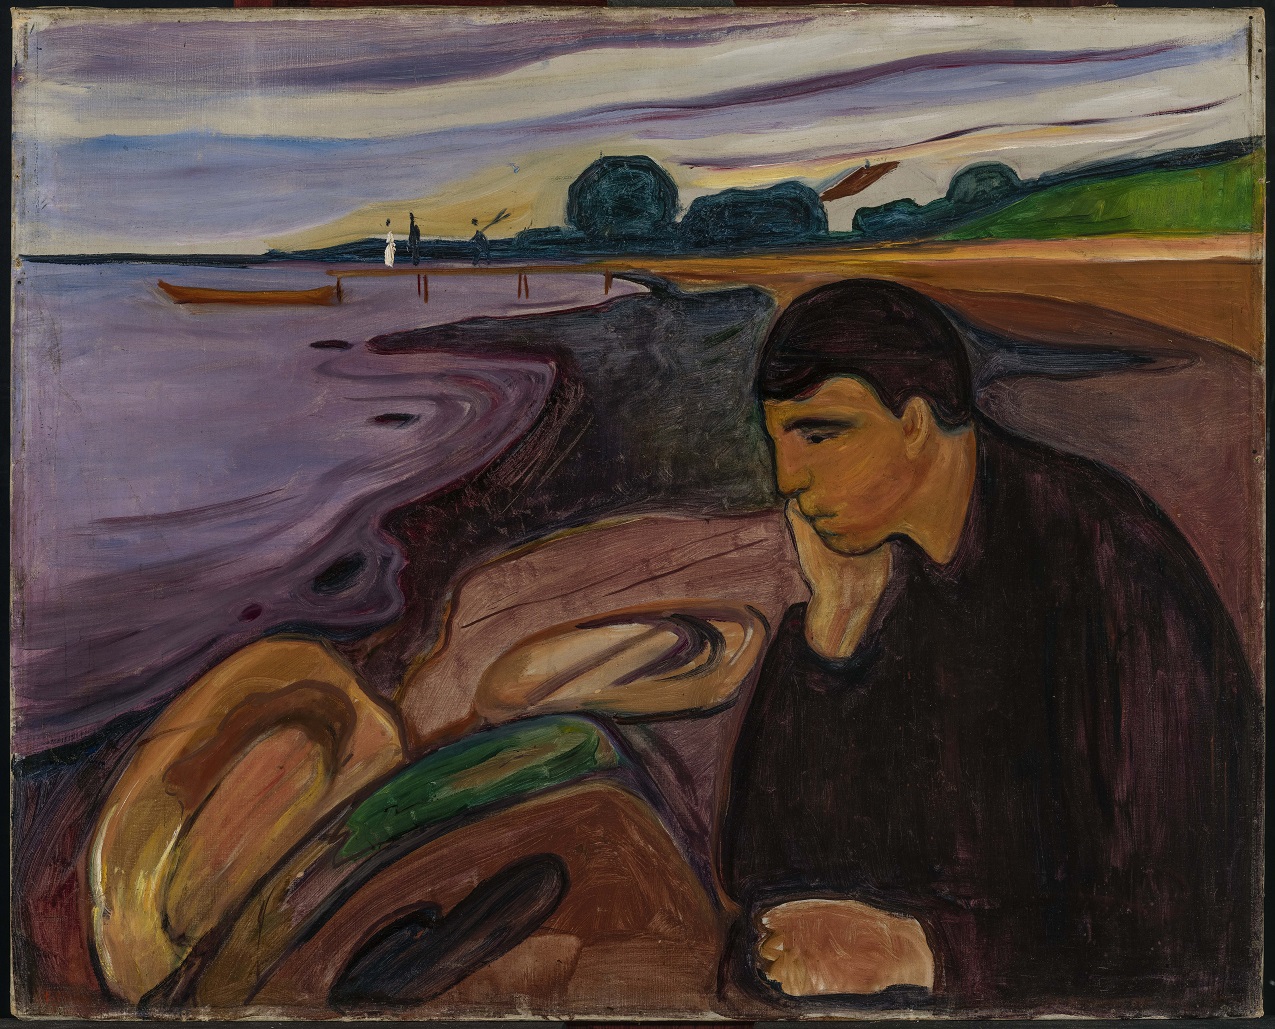 Edvard-Munch-1863-1944-Melancholy-1894-1